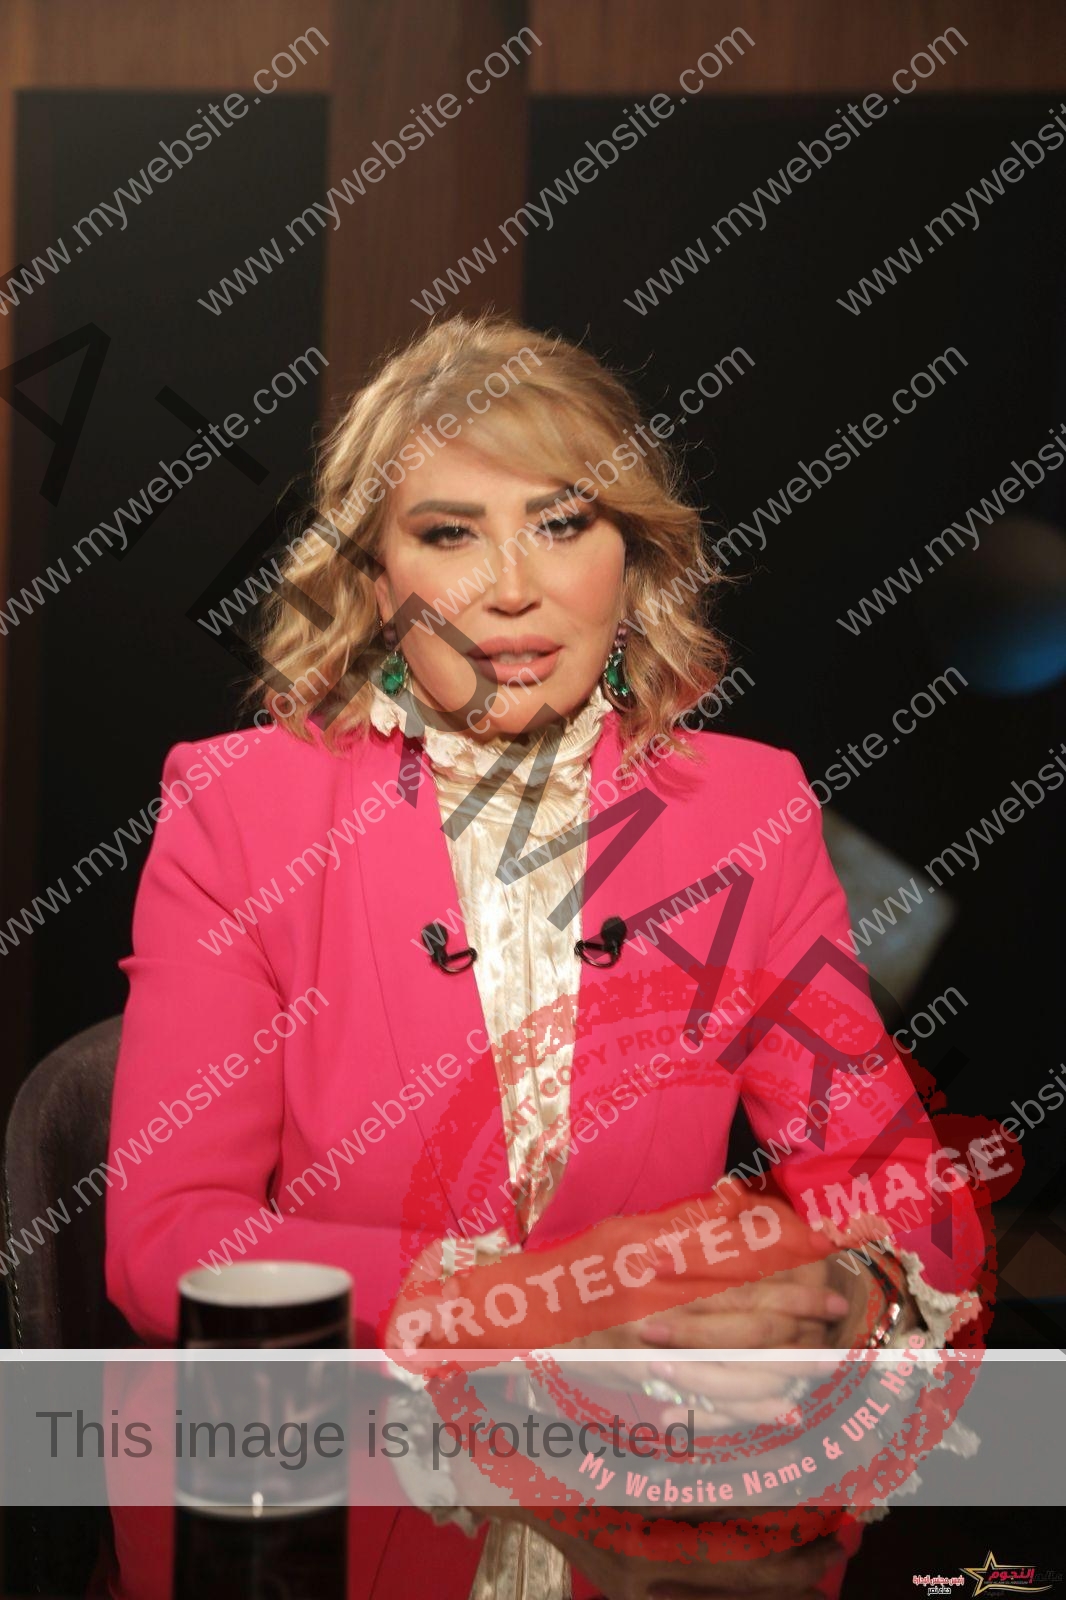 المخرجة إيناس الدغيدي: اتحطيت على قوائم الاغتيال من جماعة اسمها الوعد 